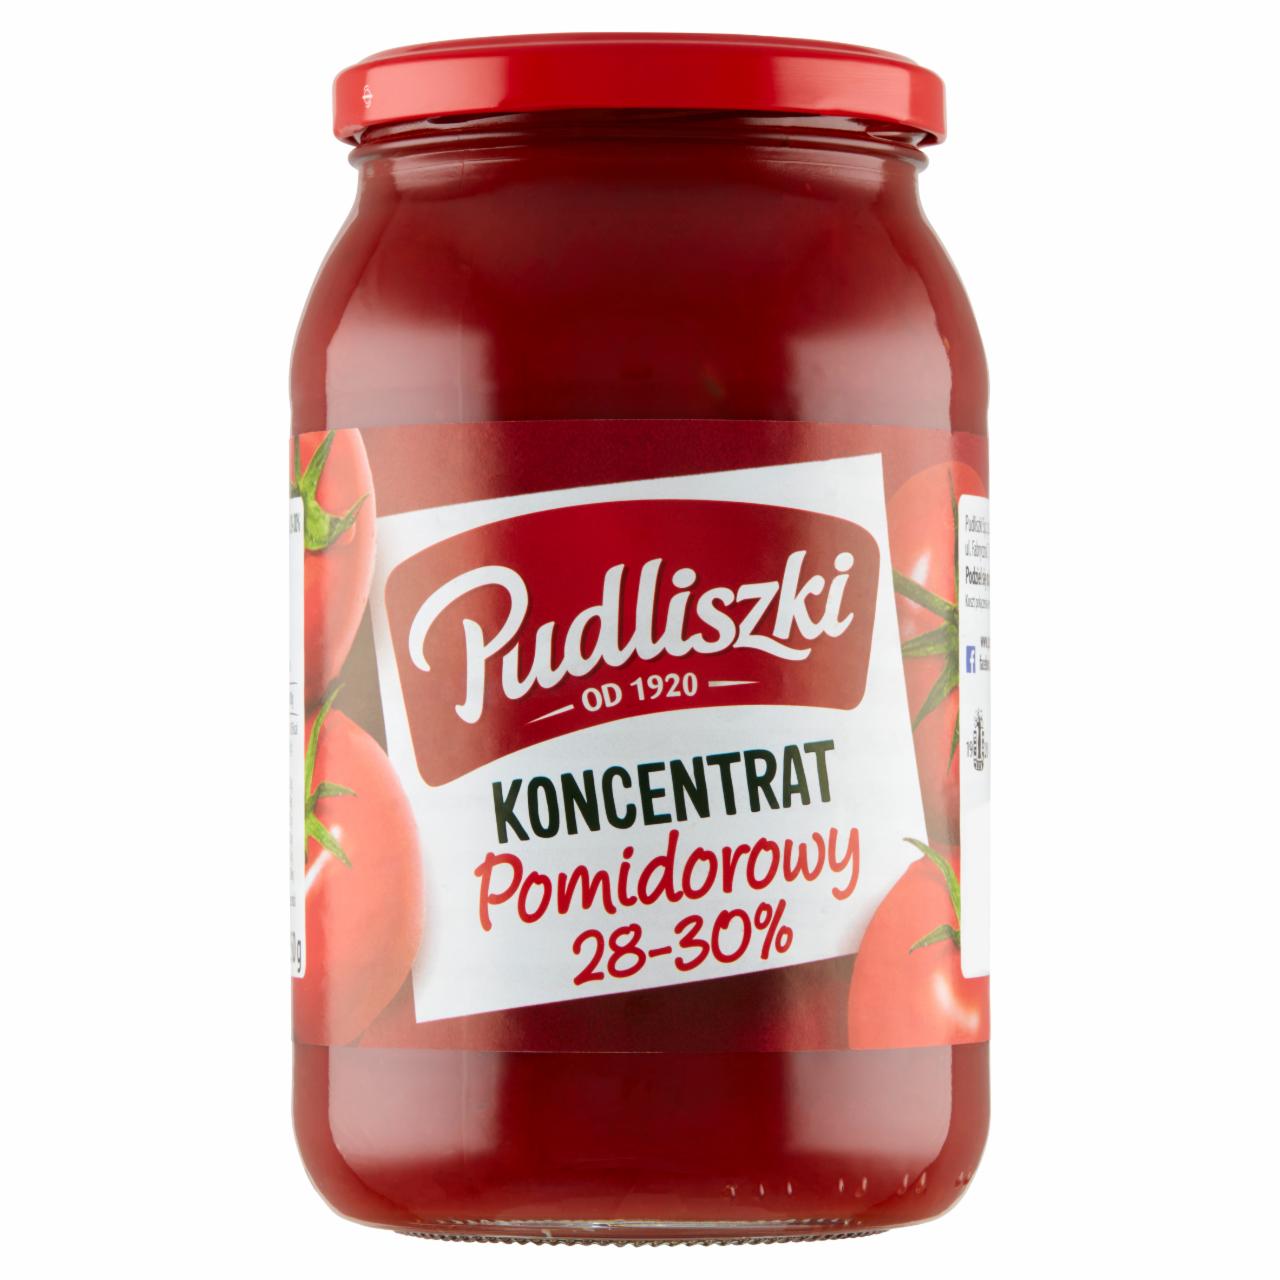 Zdjęcia - Pudliszki Koncentrat pomidorowy 28-30% 950 g